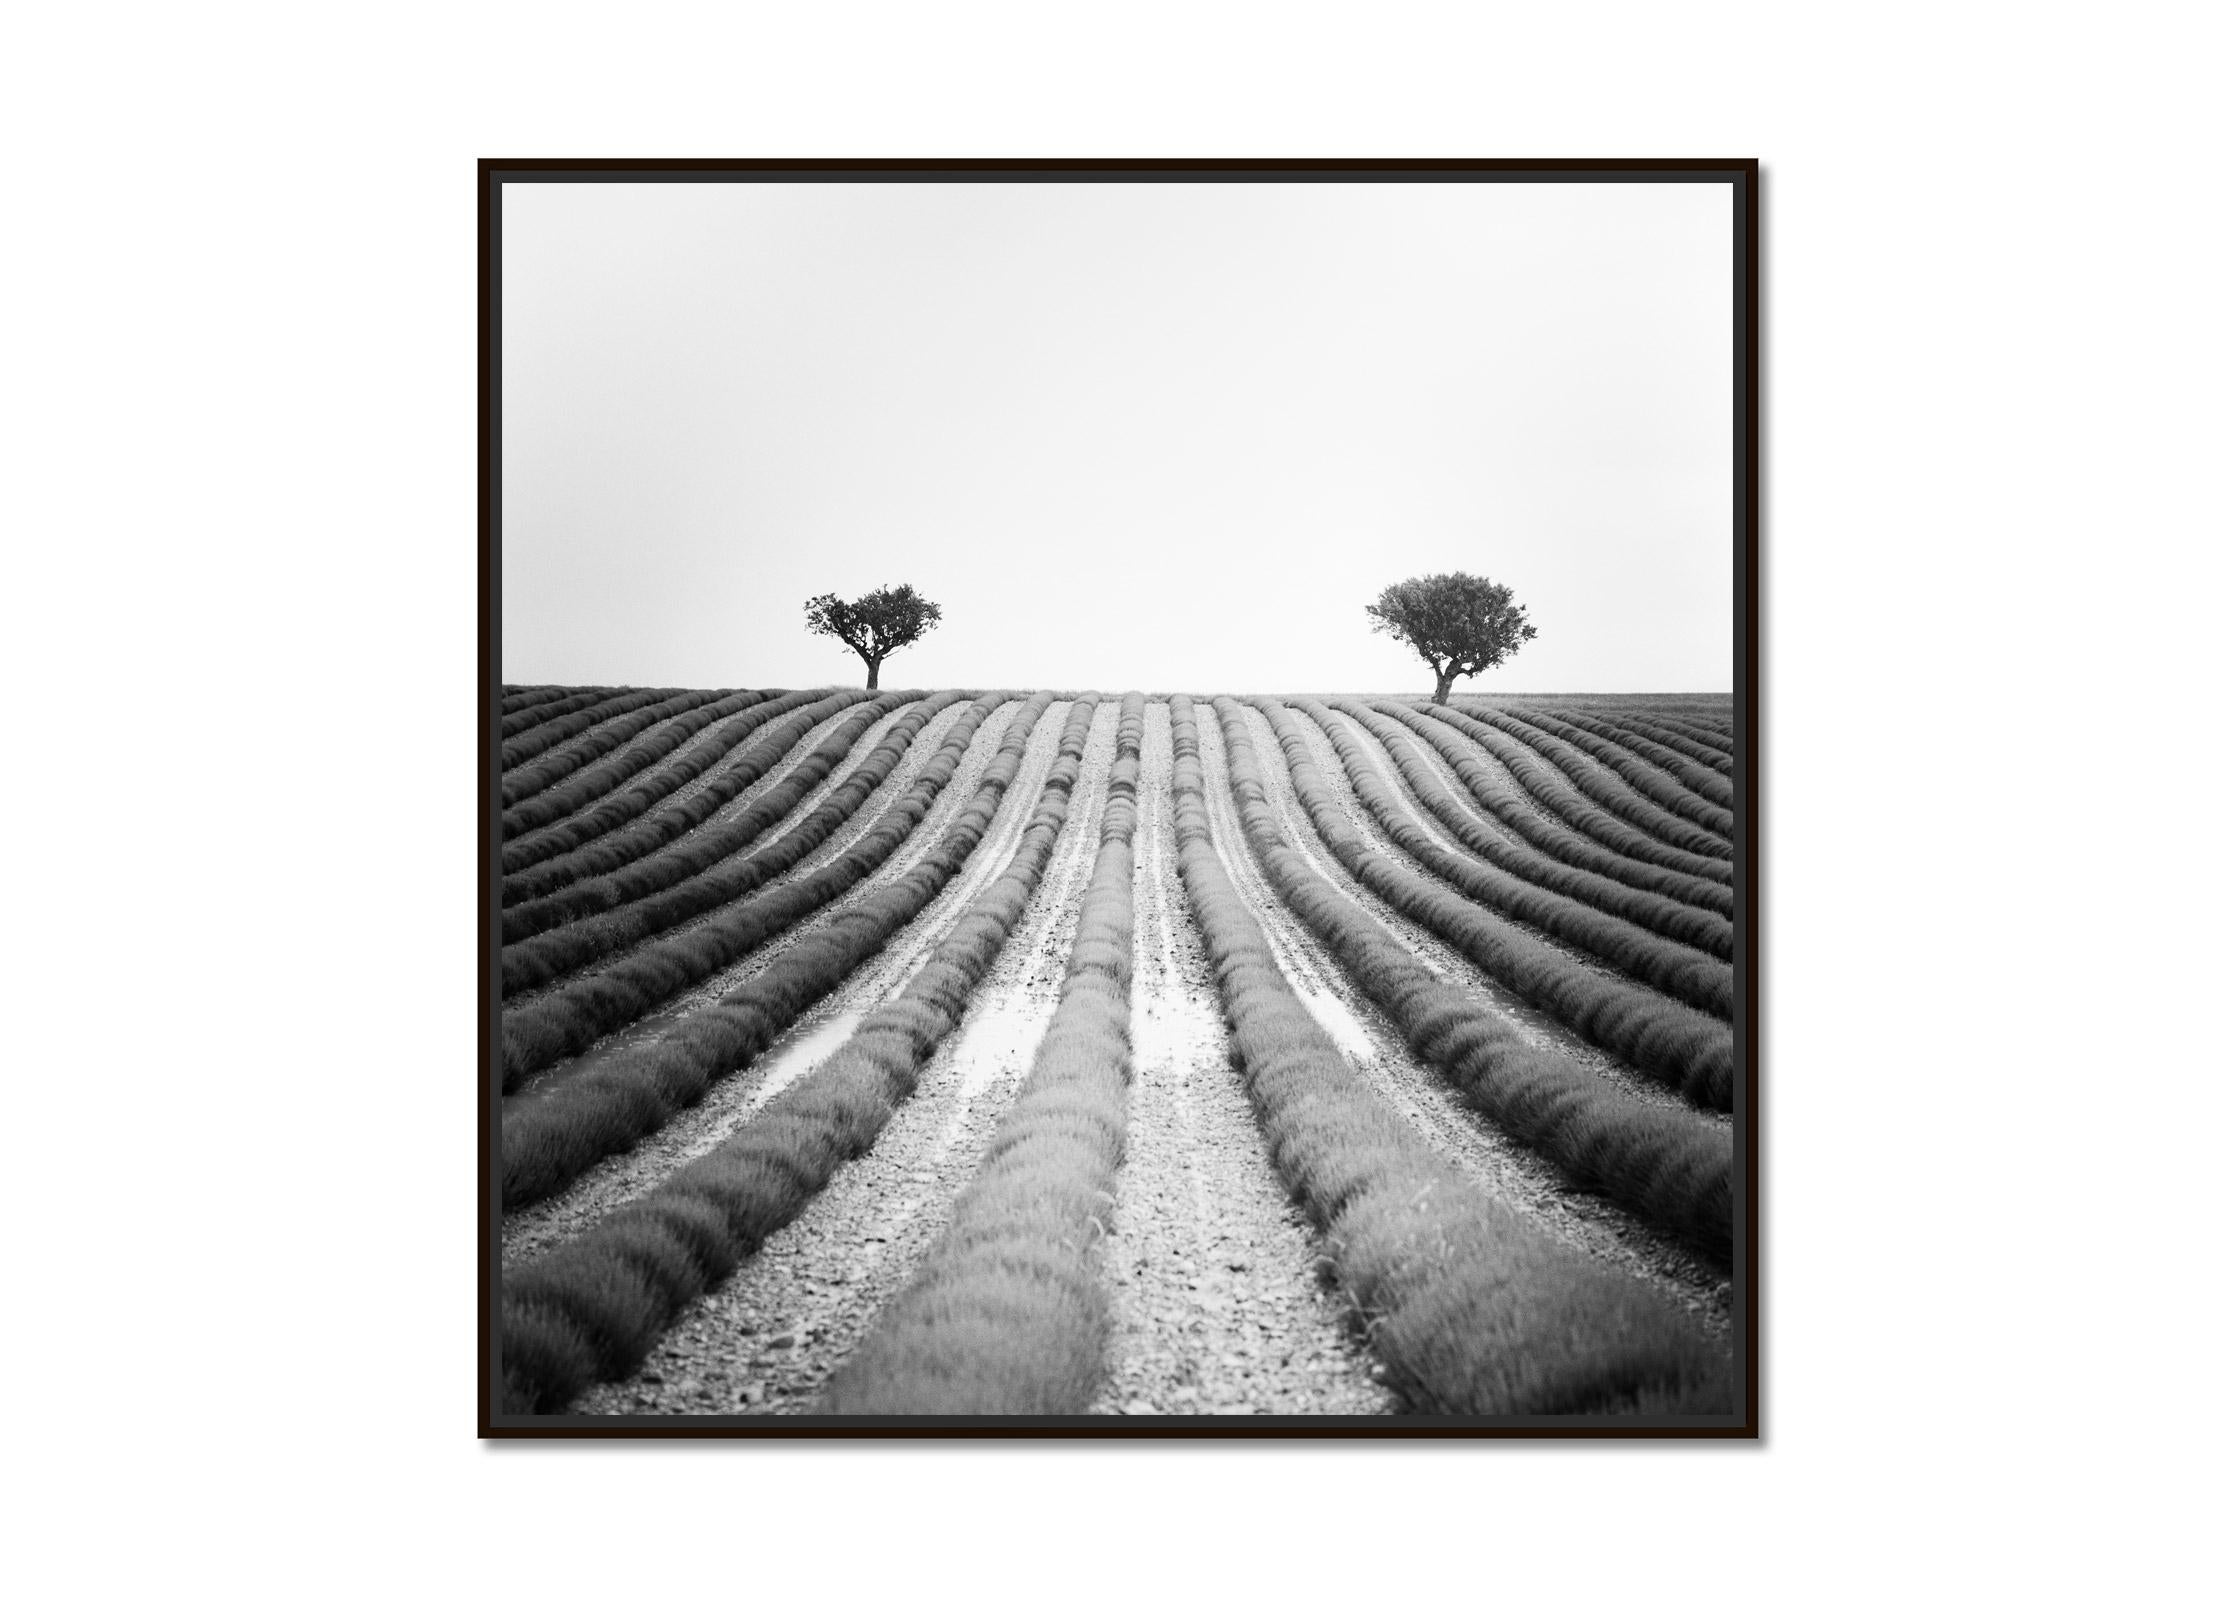 Lavendelfarbenes Feld, zwei Bäume, Provence, Frankreich, Schwarzweiß-Landschaftsfotografie – Photograph von Gerald Berghammer